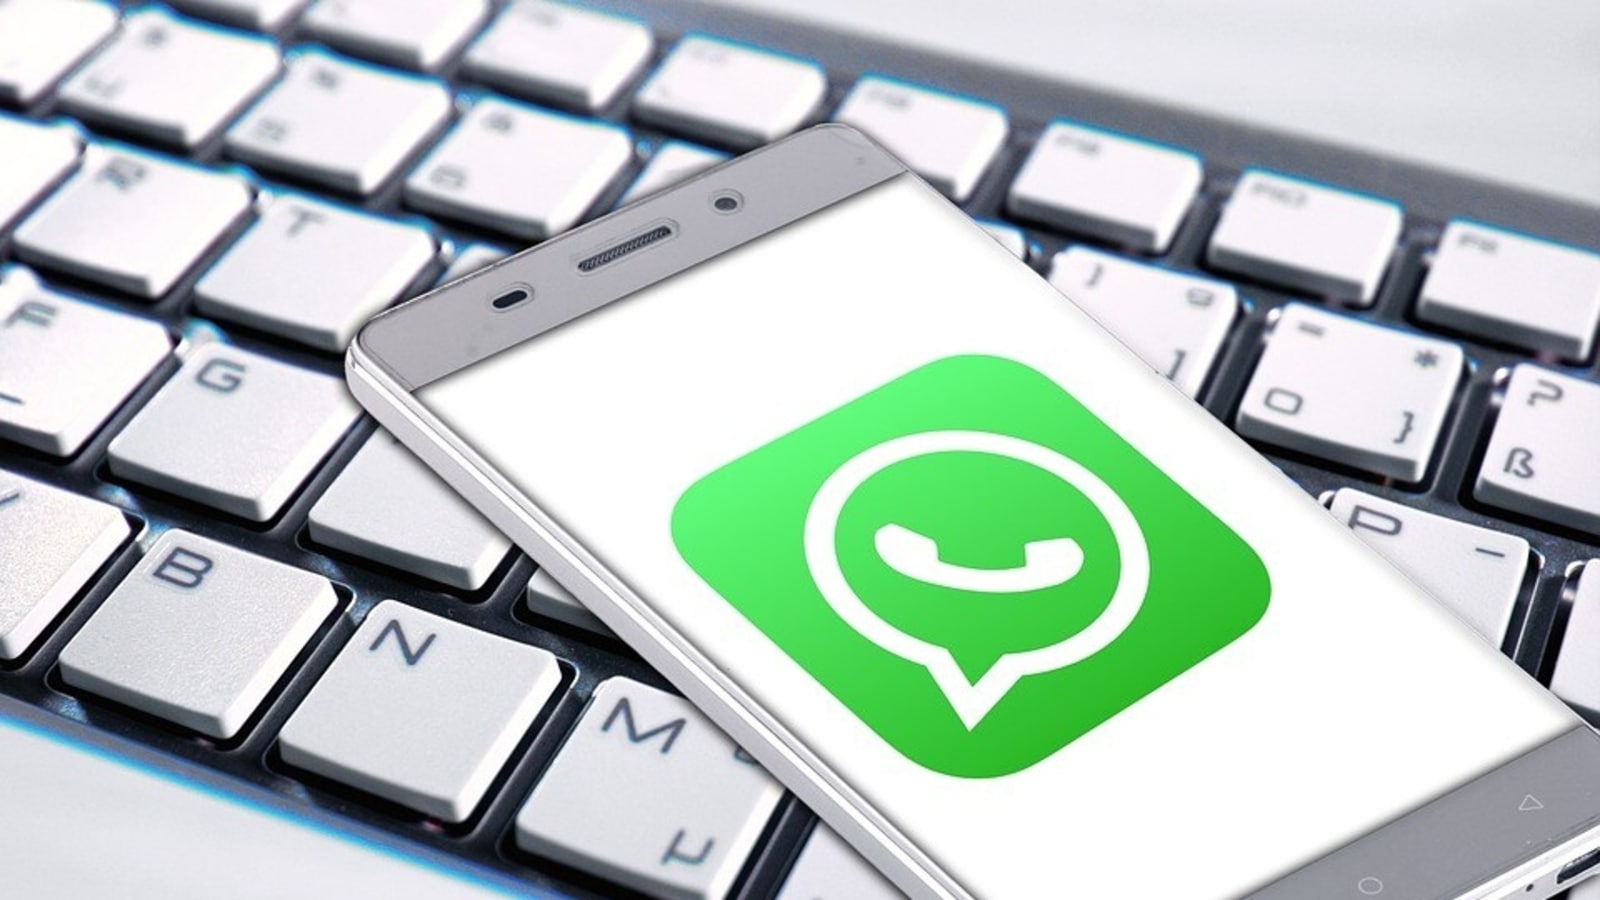 Resuelve este gran rompecabezas con estos trucos y consejos de WhatsApp en iPhone y Android